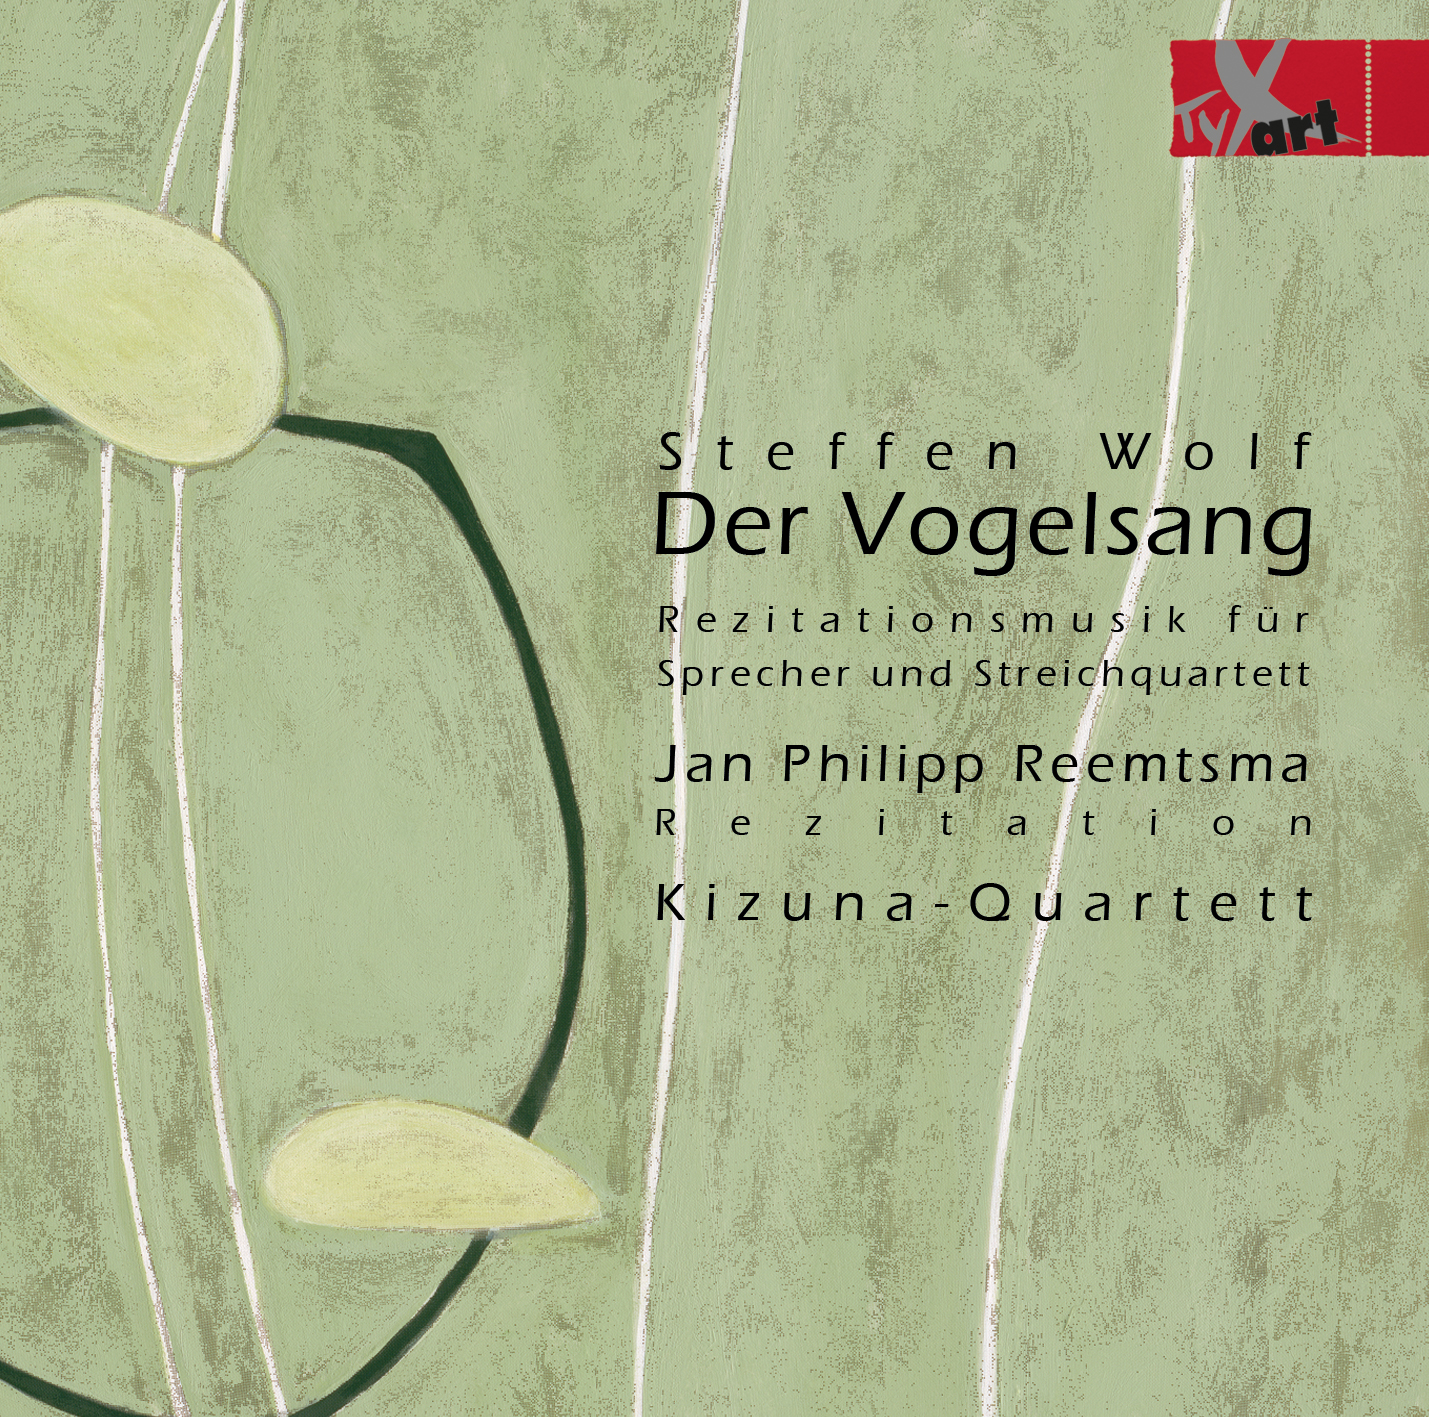 Steffen Wolf - Der Vogelsang - The Songbird - Jan Philipp Reemtsma – Kizuna Quartet